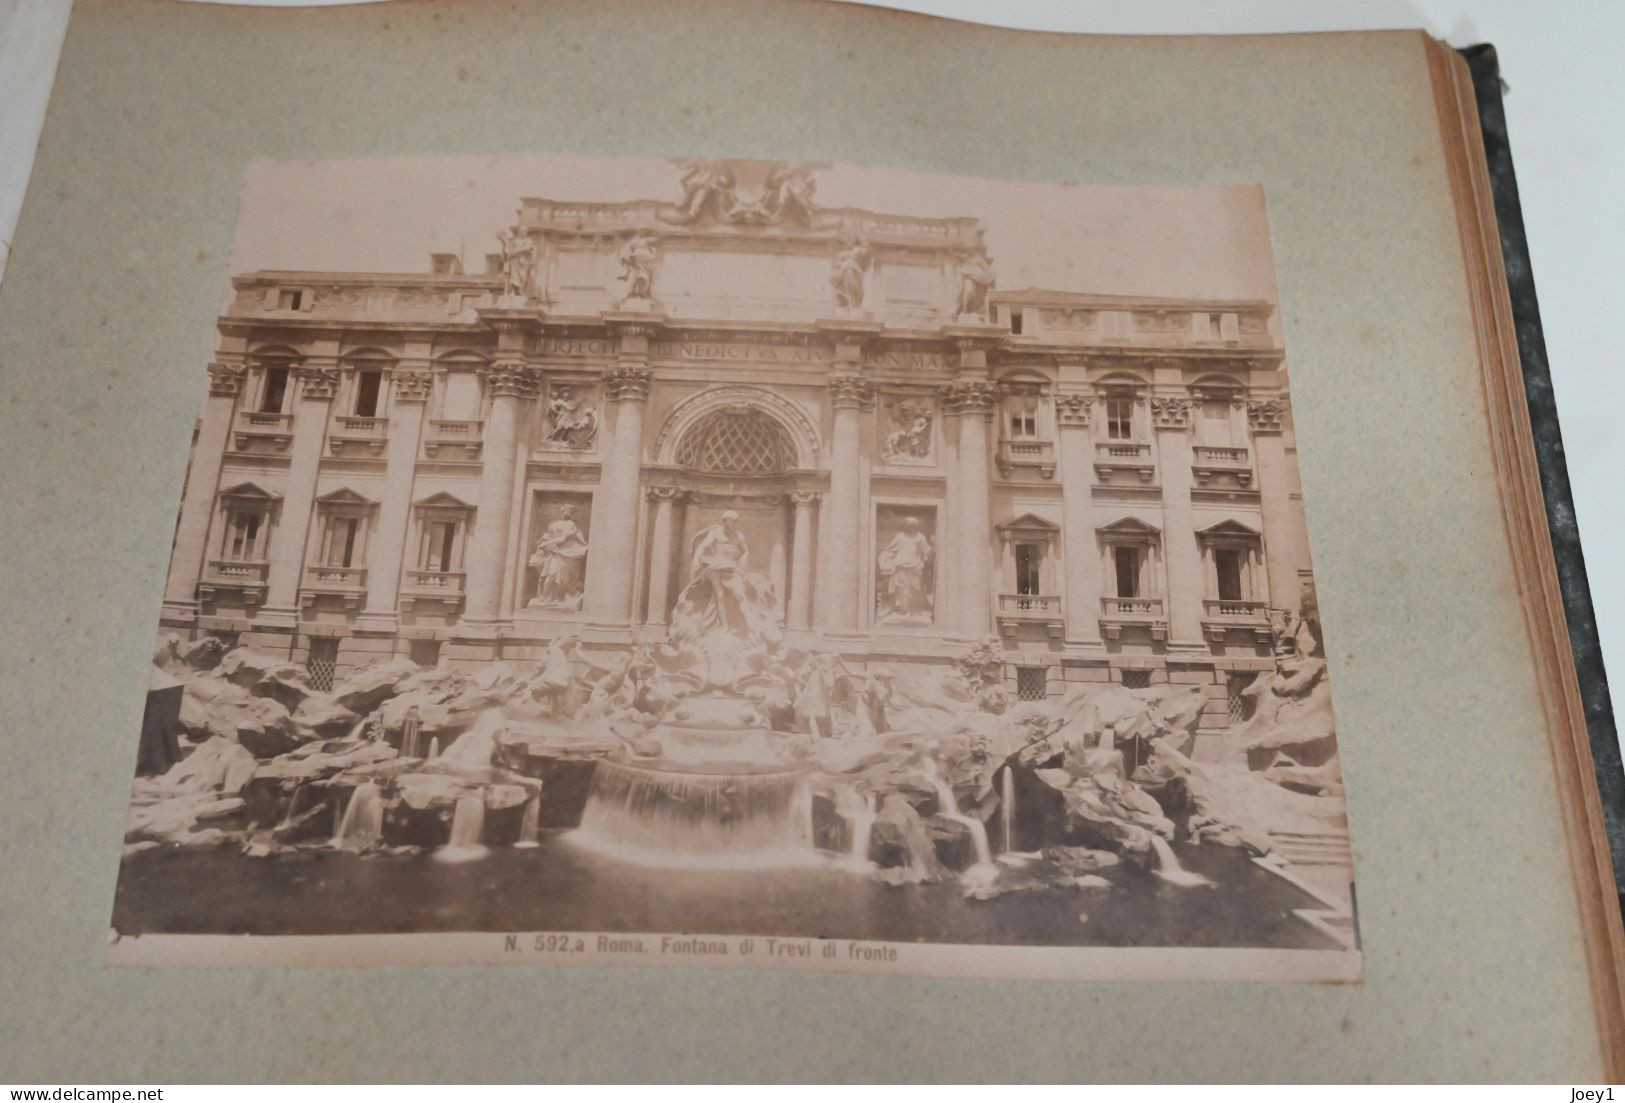 Album photos albuminées 19ème siècle Italie, Naples,Pompei Gènes, Pise, Rome...photos format 20/26